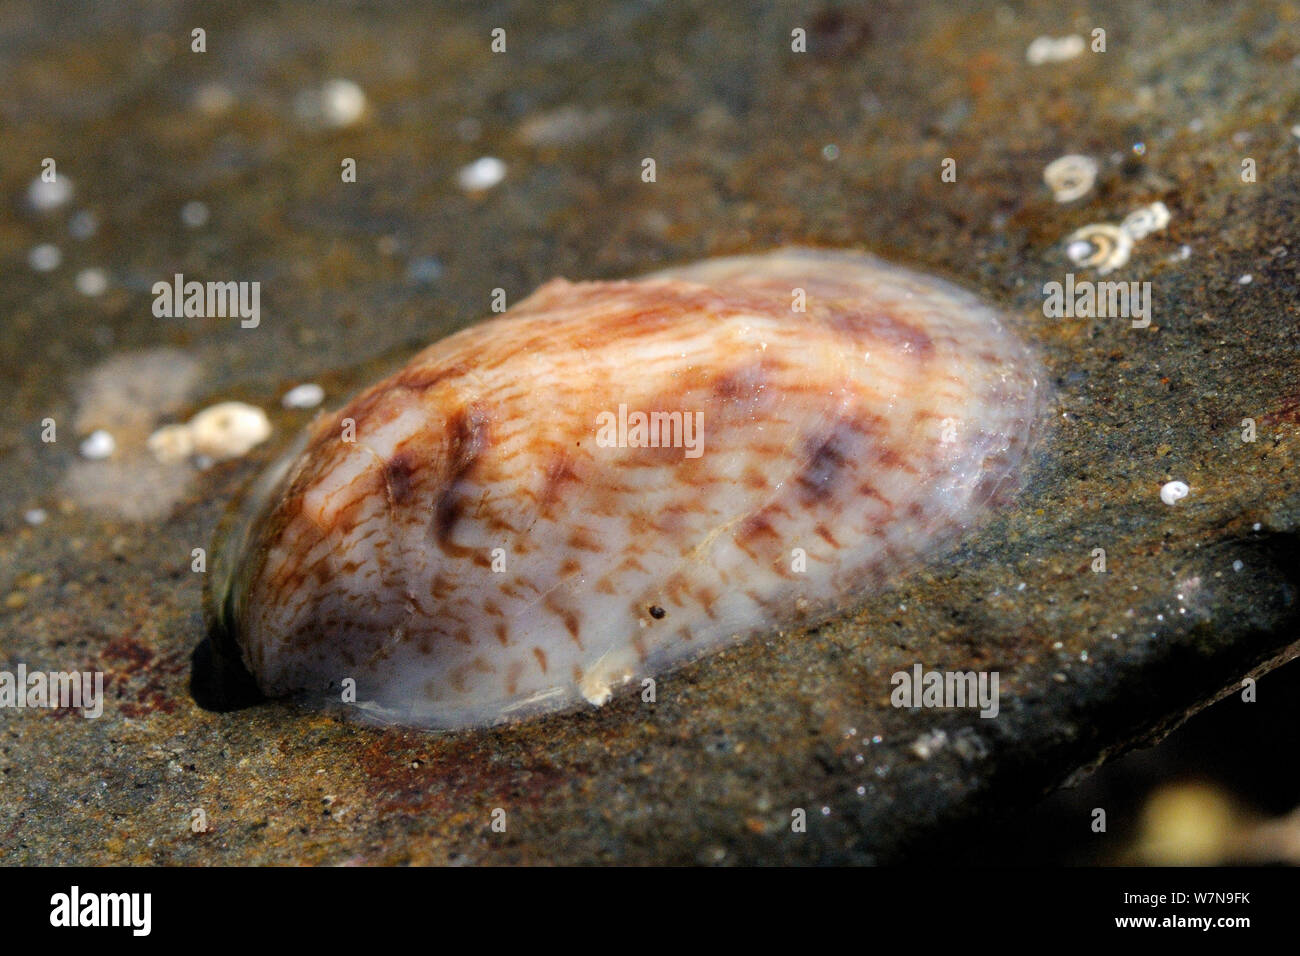 Young American slipper limpet (Crepidula fornicata) una peste invasiva di ostriche in Europa, attaccato ad un masso trovato bassa su una spiaggia rocciosa, vicino a Colchester, Regno Unito, Agosto. Foto Stock